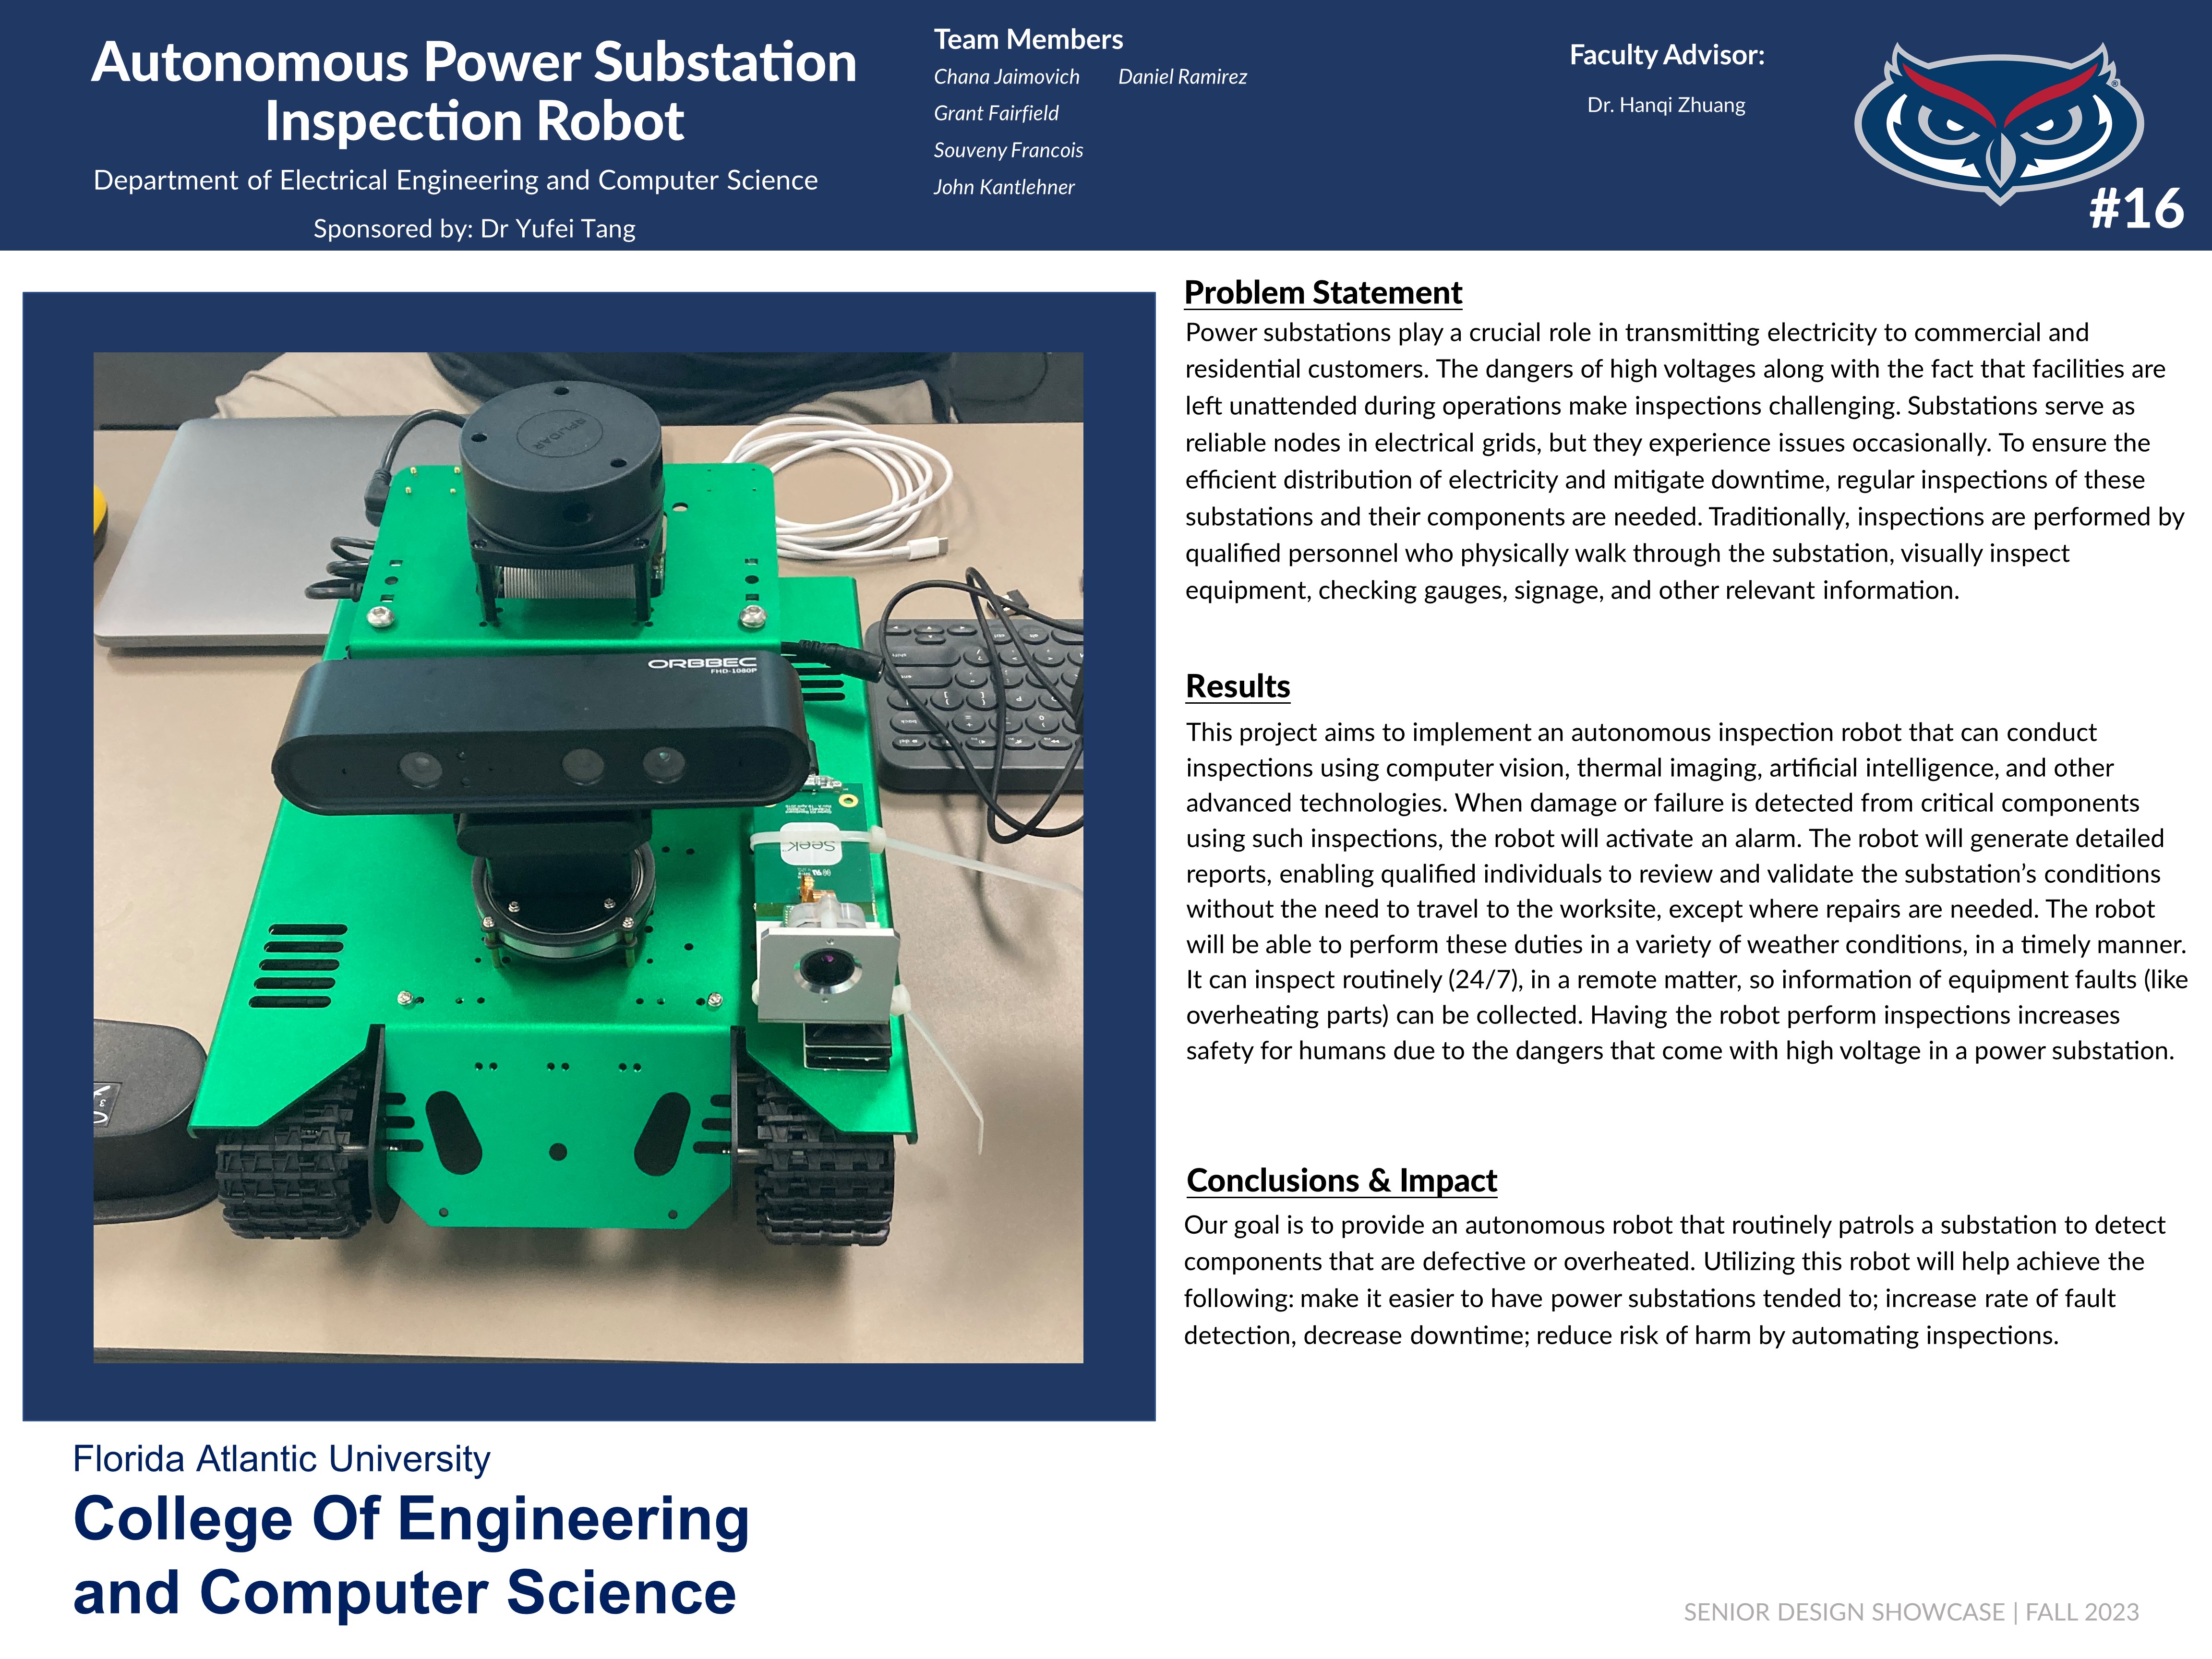 Autonomous Power Substation Inspection